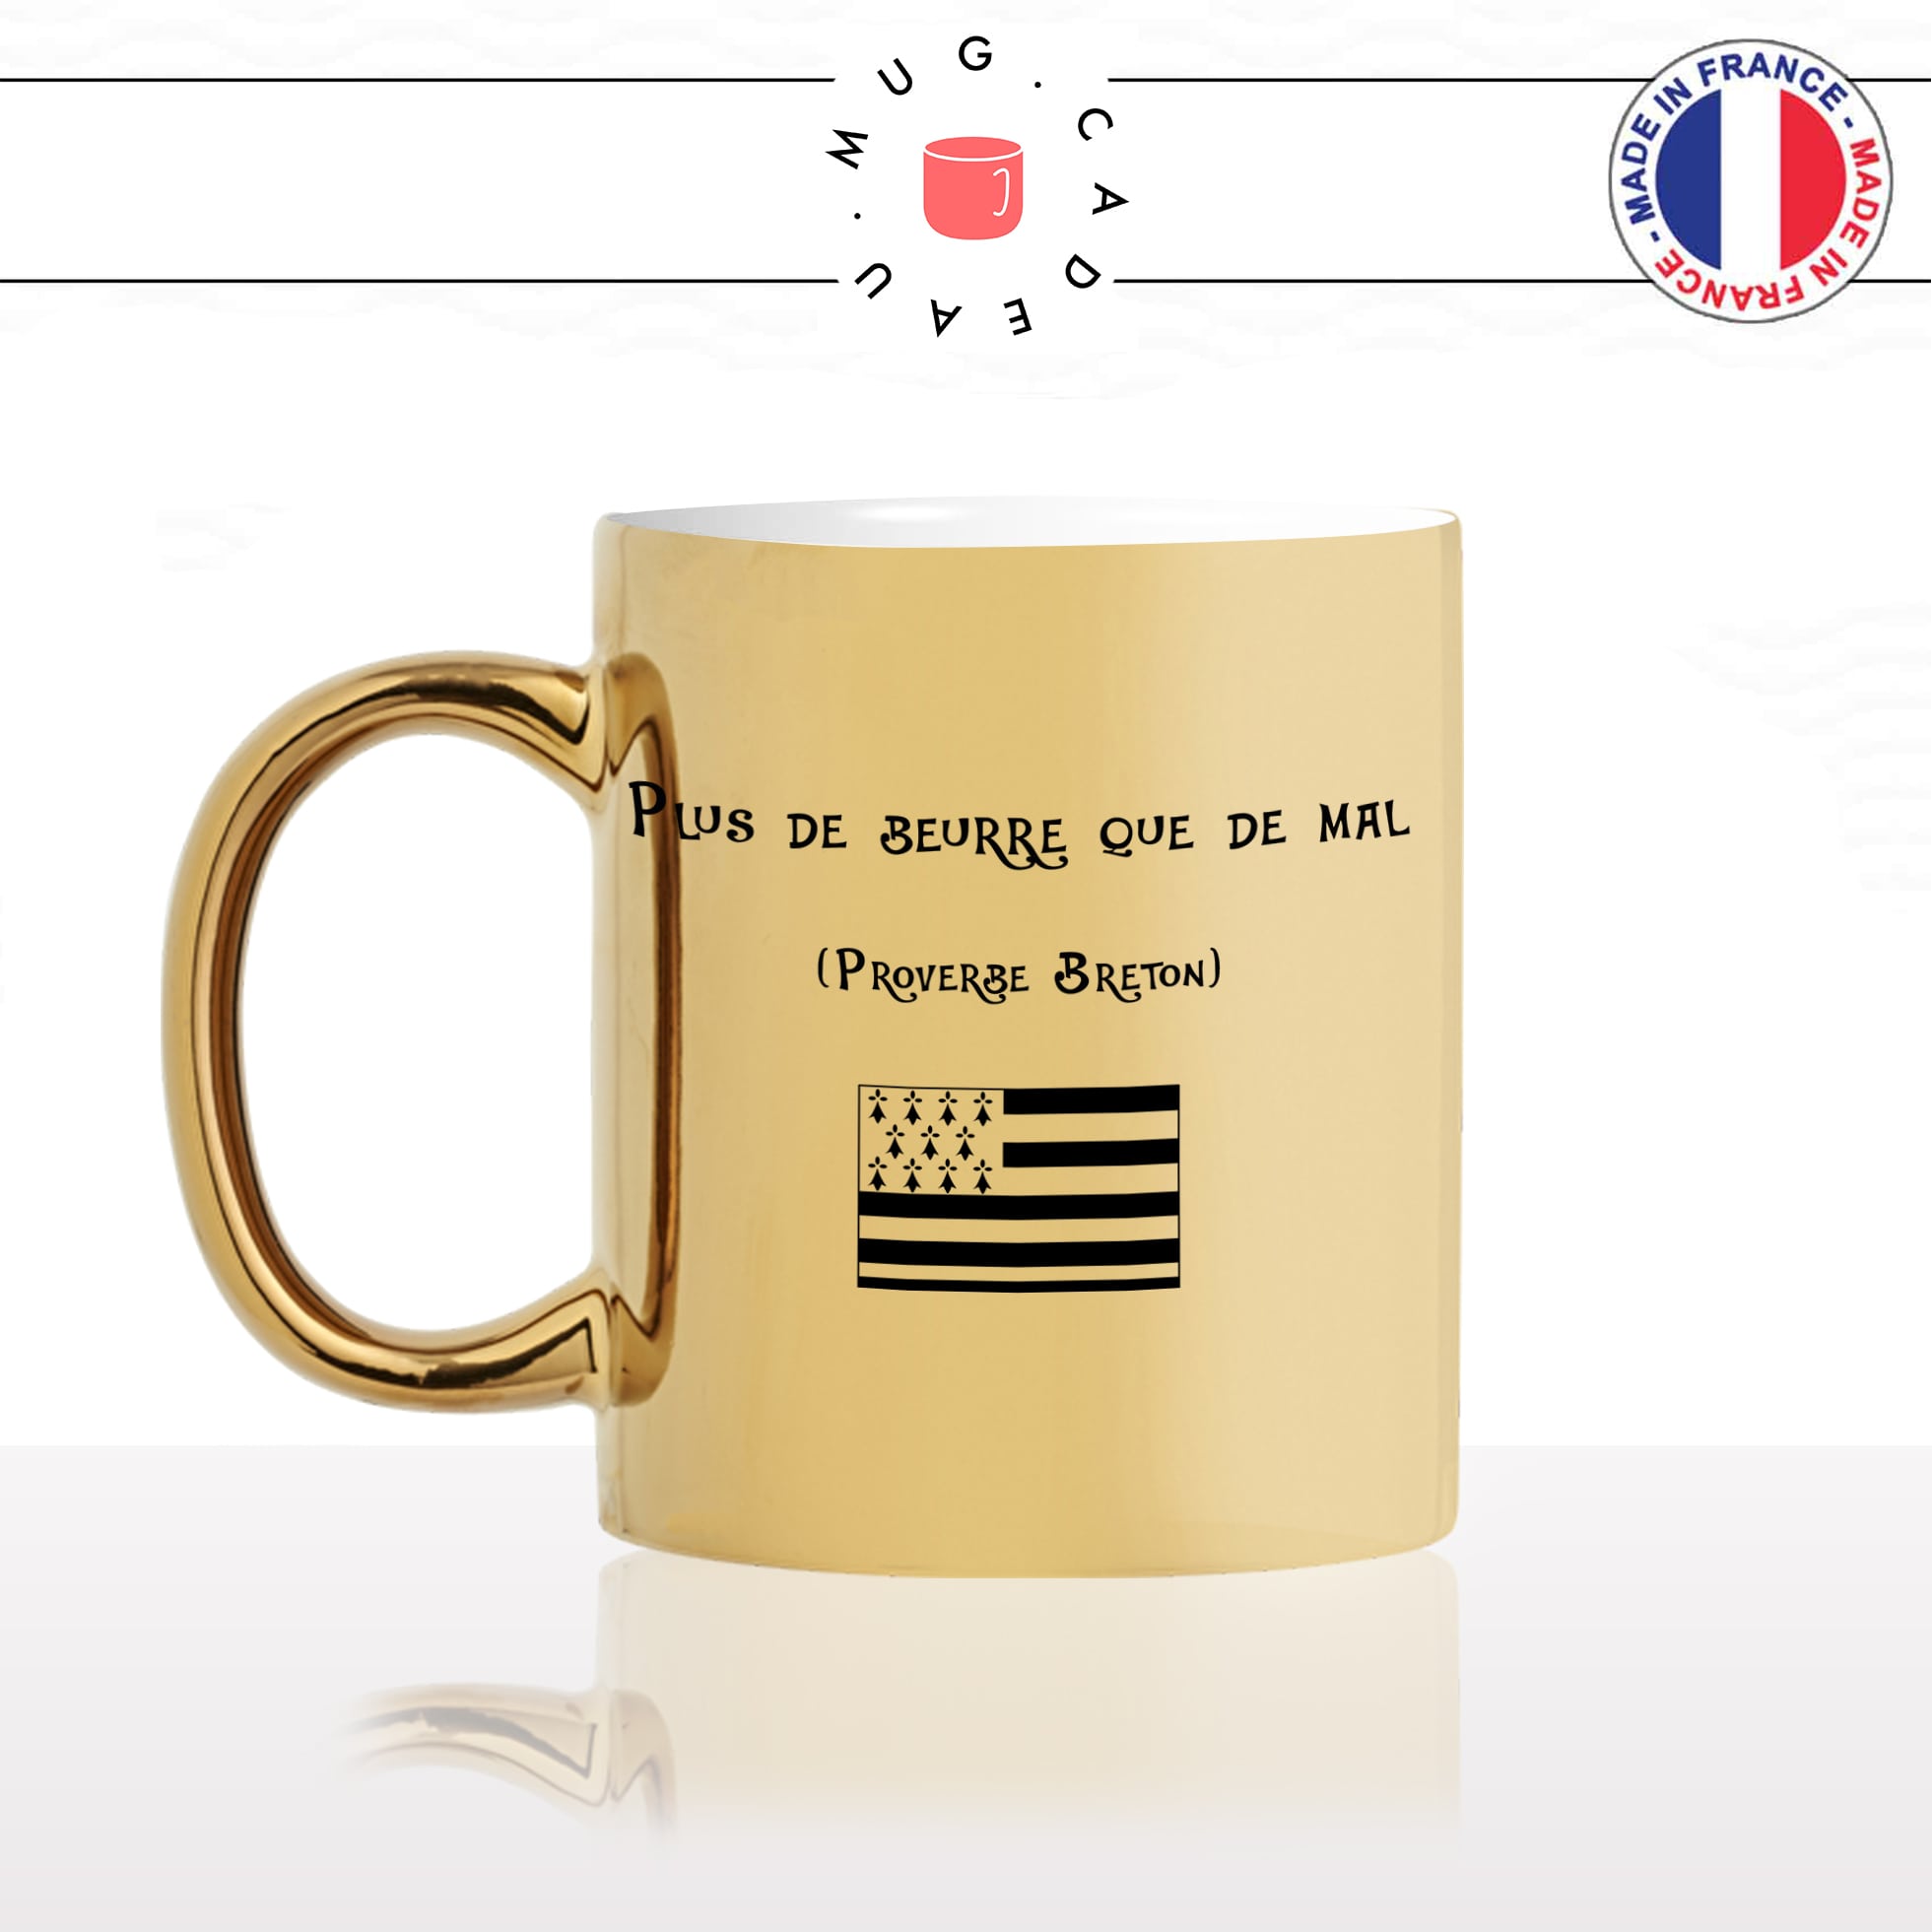 mug-tasse-doré-or-gold-plus-de-beurre-que-de-mal-bretagne-breton-proverbe-drapeau-original-humour-fun-idée-cadeau-personnalisé-café-thé-min